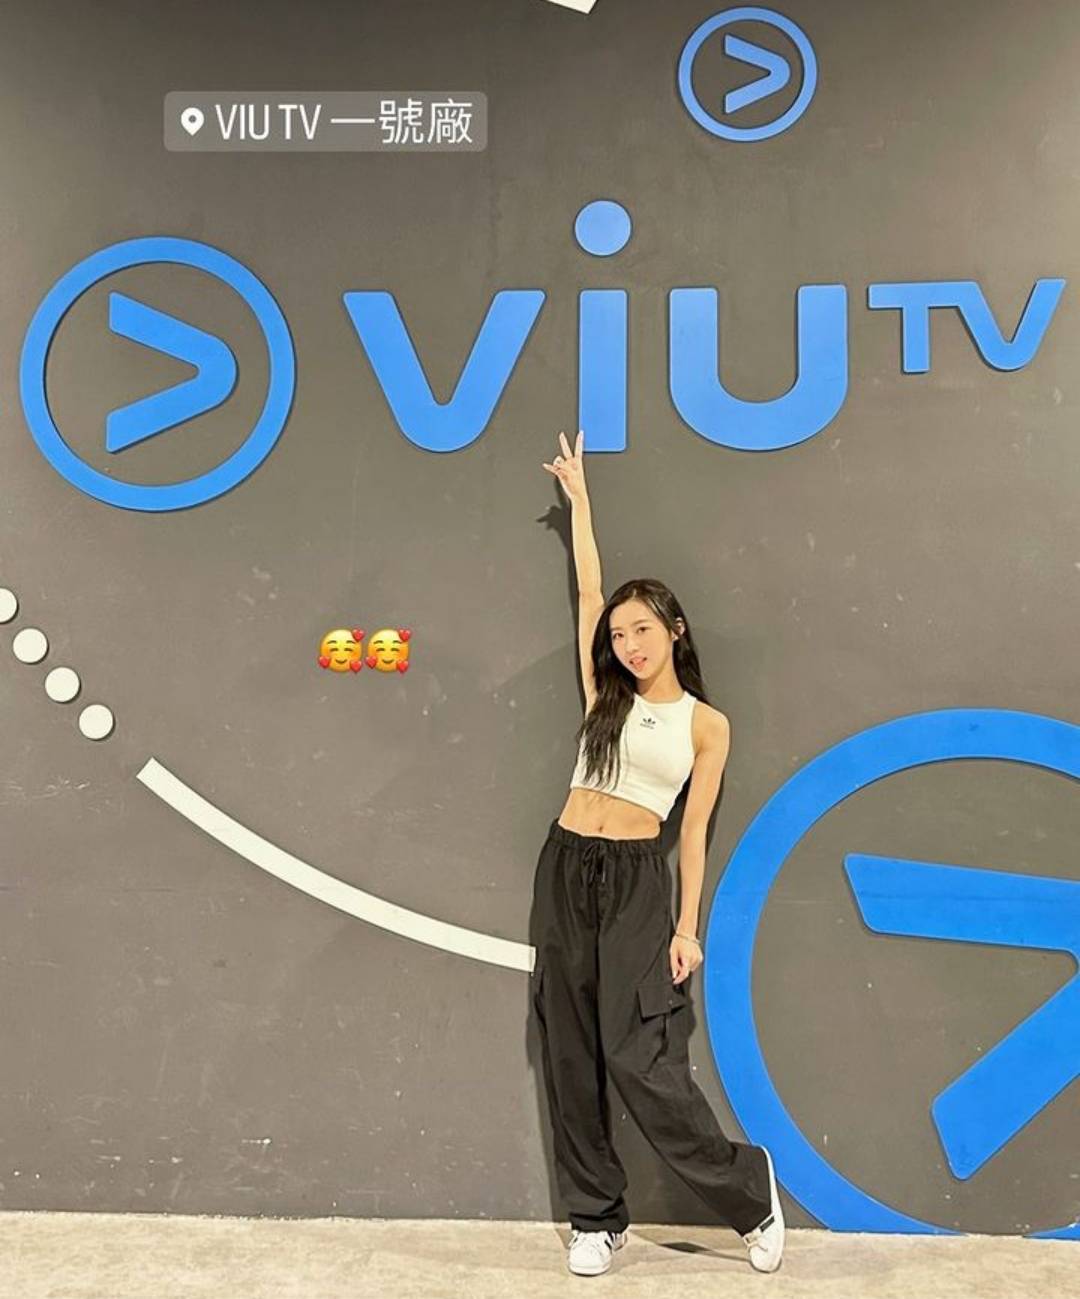 戀講嘢 Krystal穿著露腰運動裝上ViuTV做《戀講嘢》嘉賓。